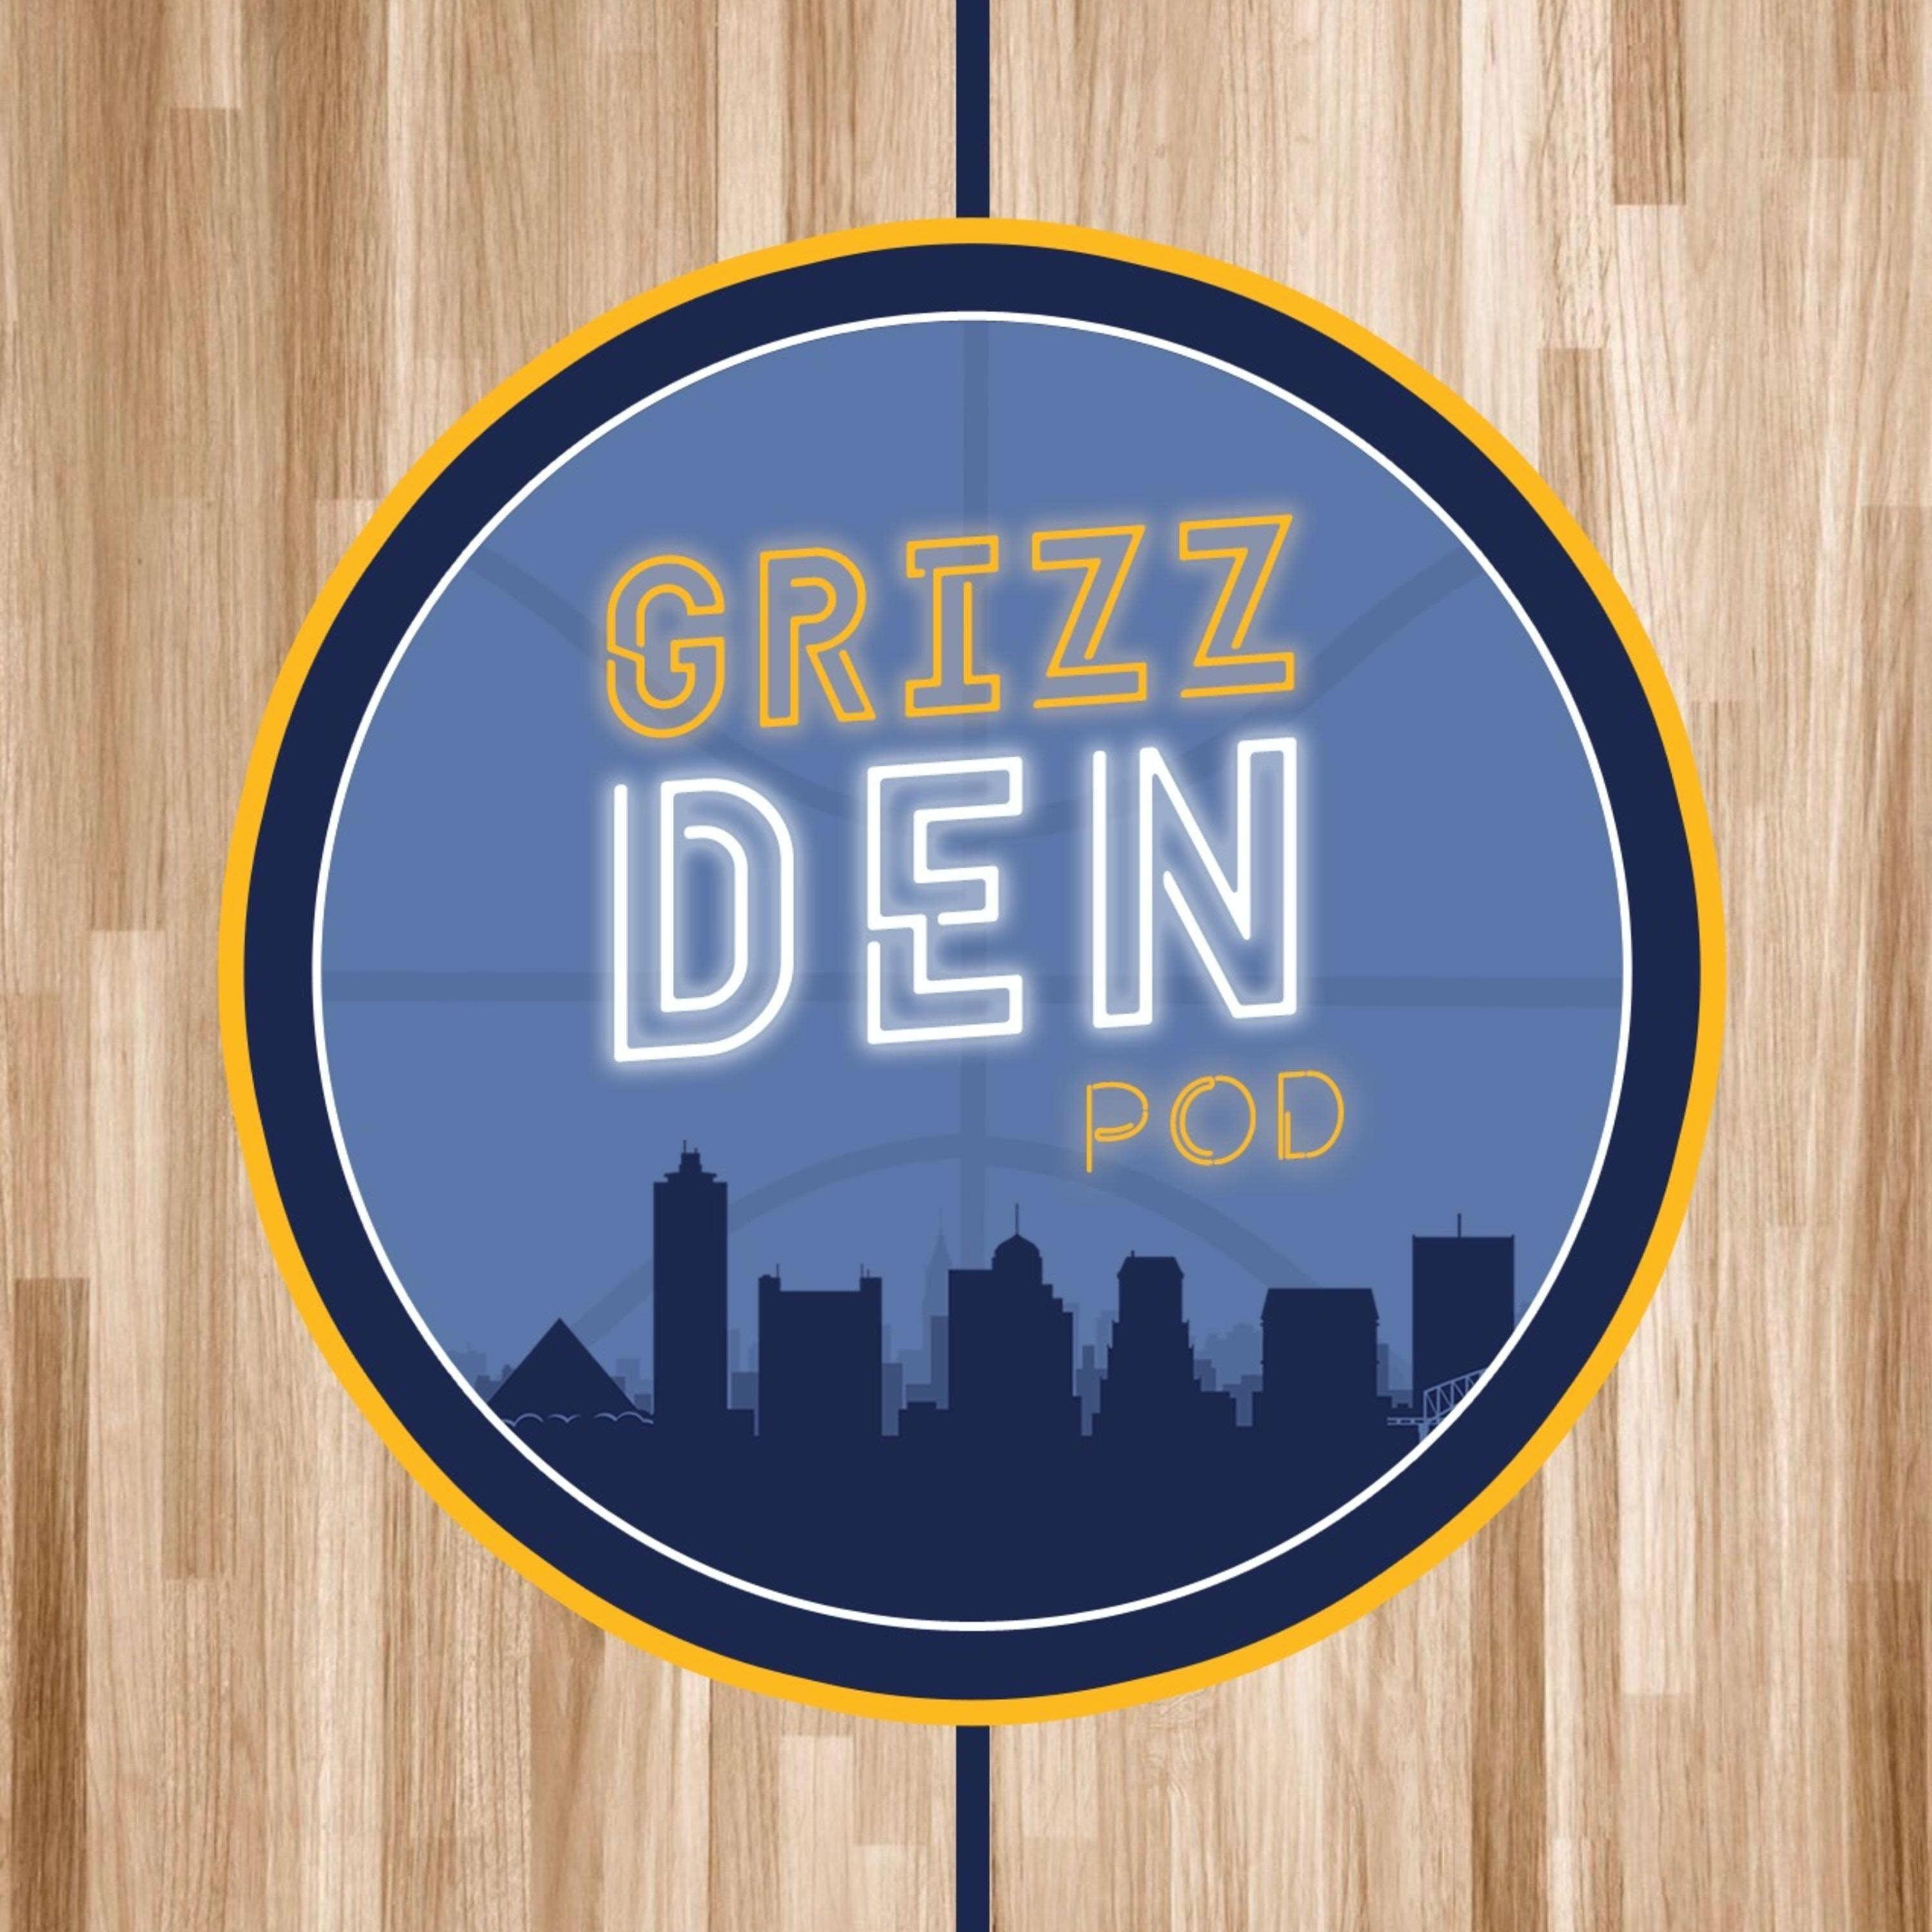 Grizz Den Podcast - for Memphis Grizzlies fans, by Memphis Grizzlies fans